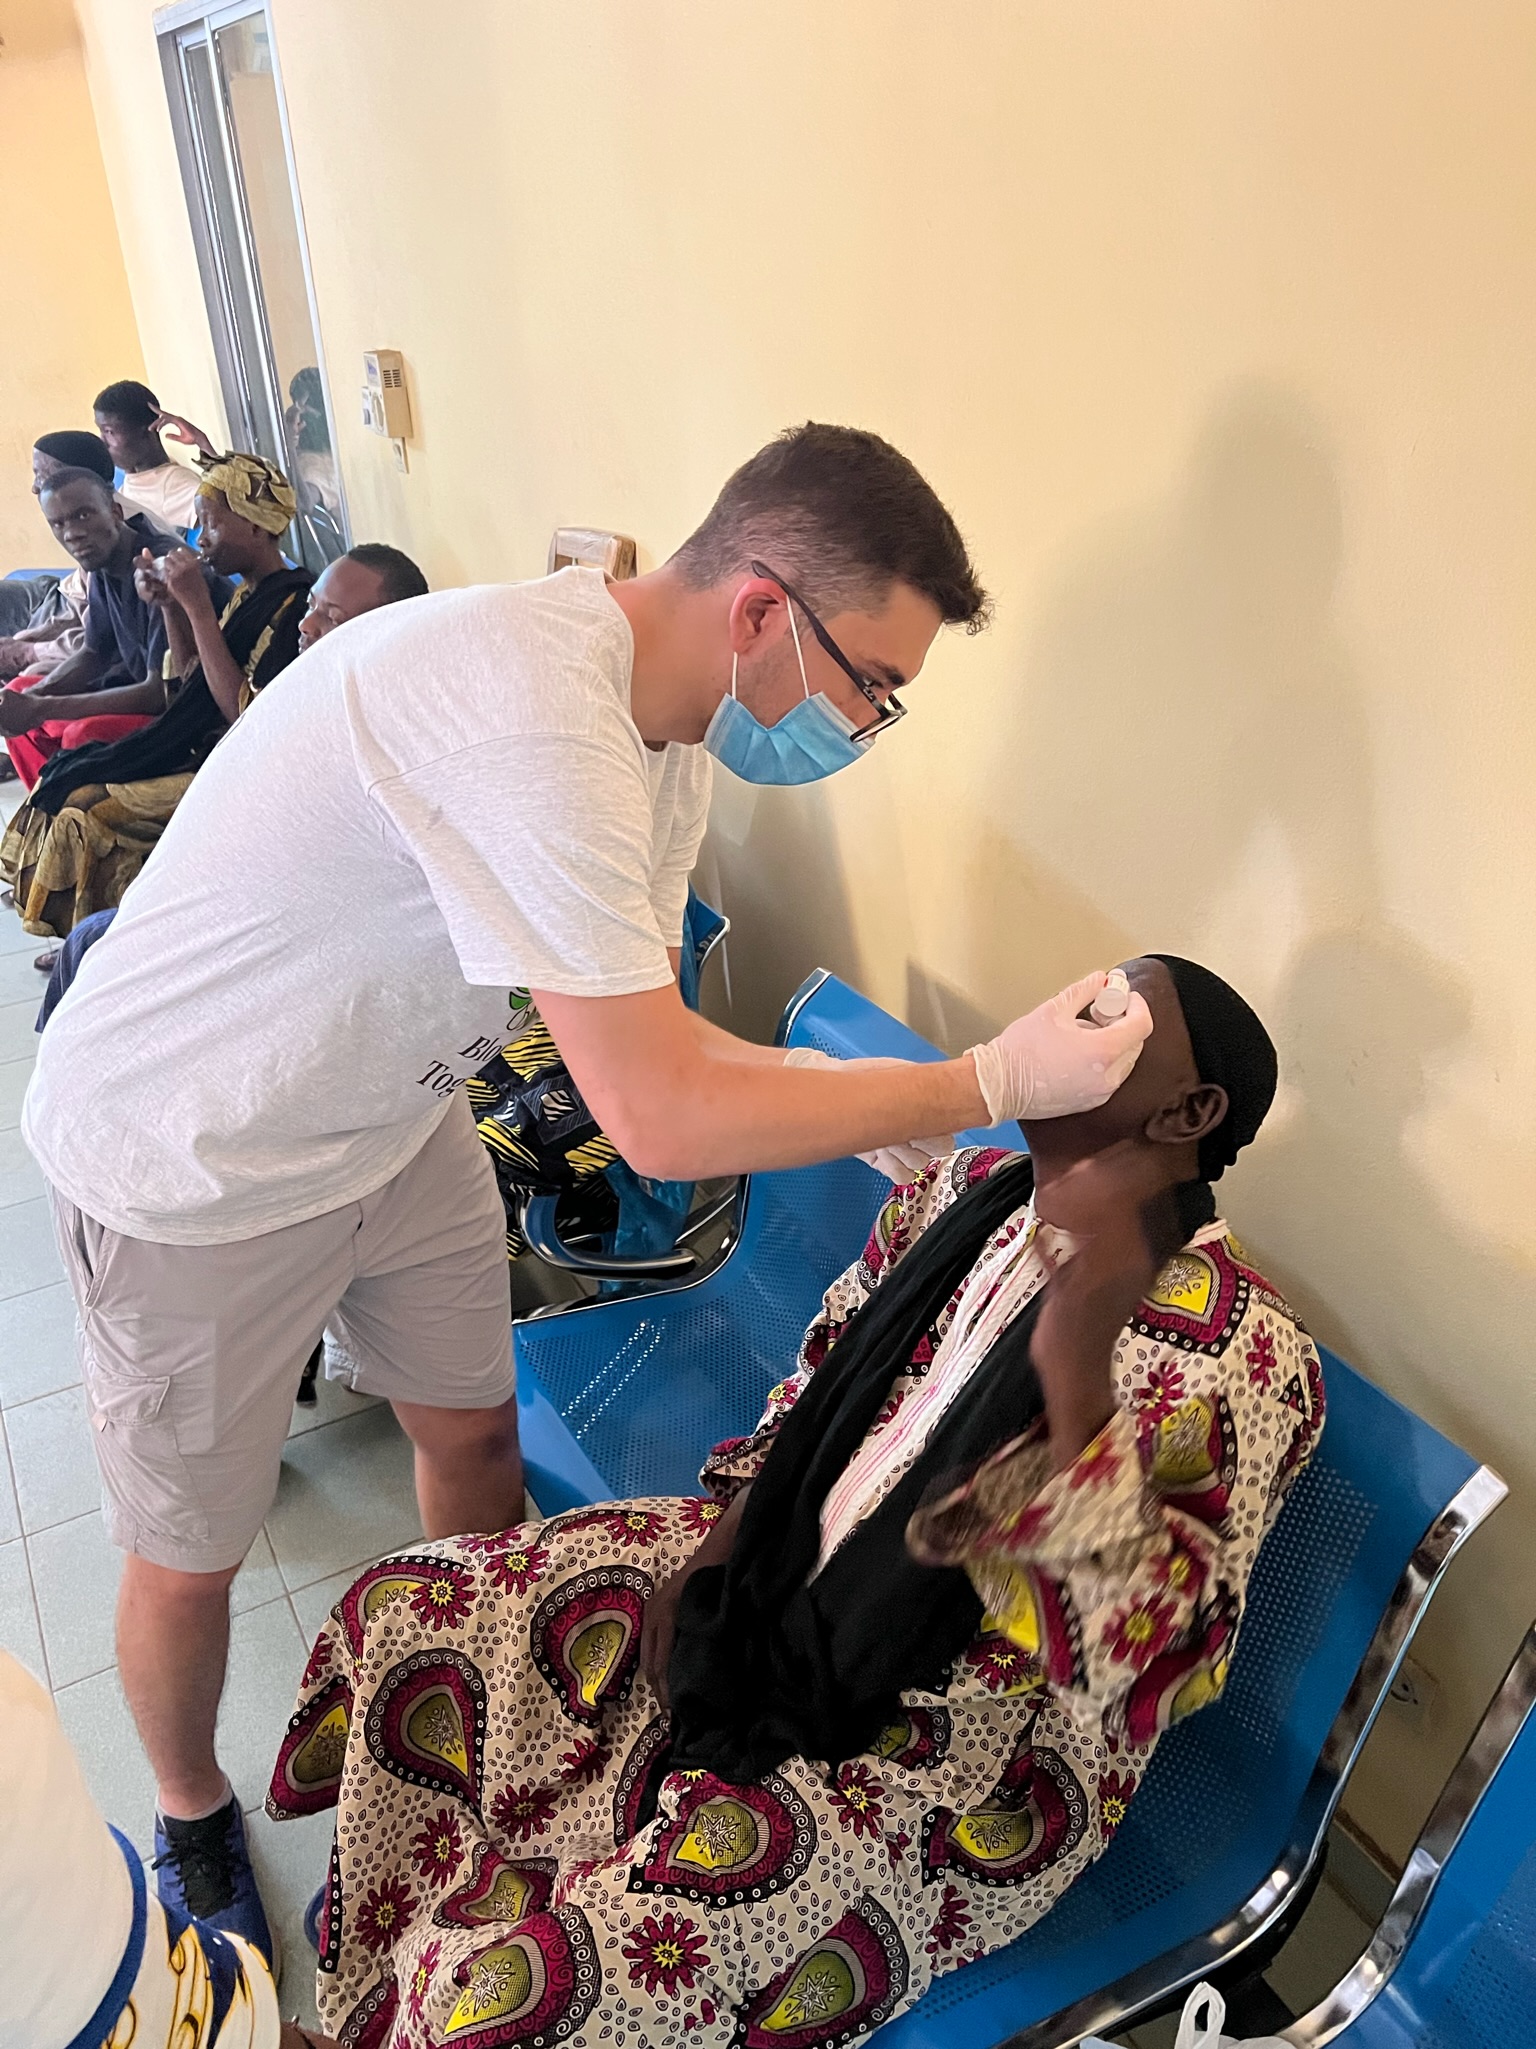 Student administering medicine in Mali